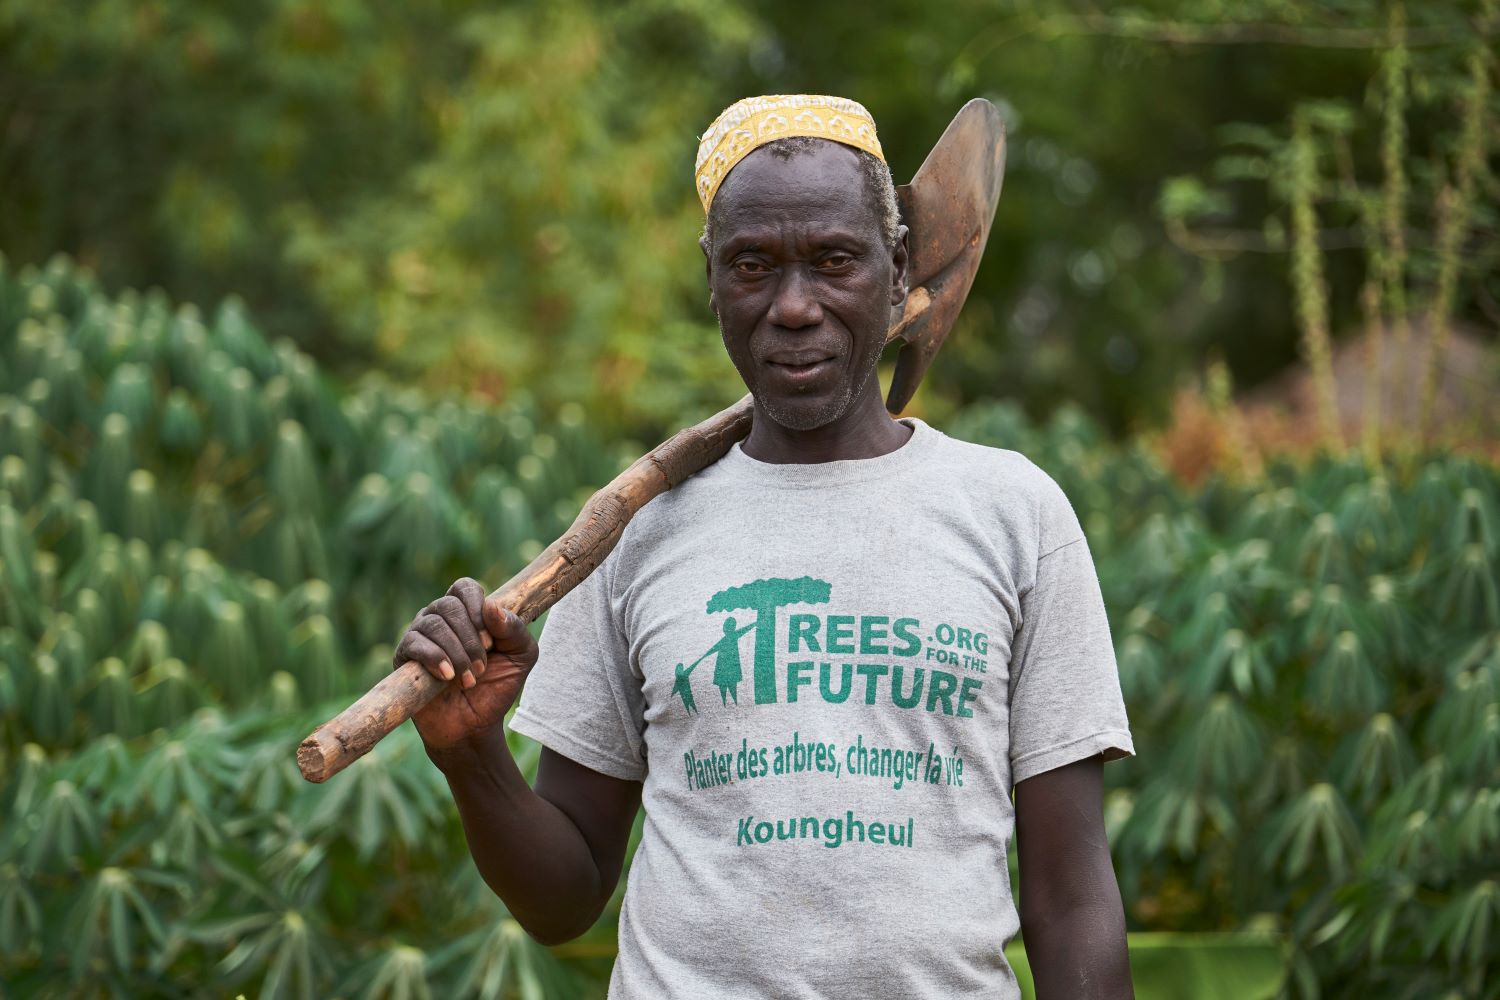 Bäume zu pflanzen bedeutet harte Arbeit. Die Veränderung ihres Landes in fruchtbare Waldgärten verändert jedoch nachhaltig die Leben vieler Menschen und Gemeinschaften.